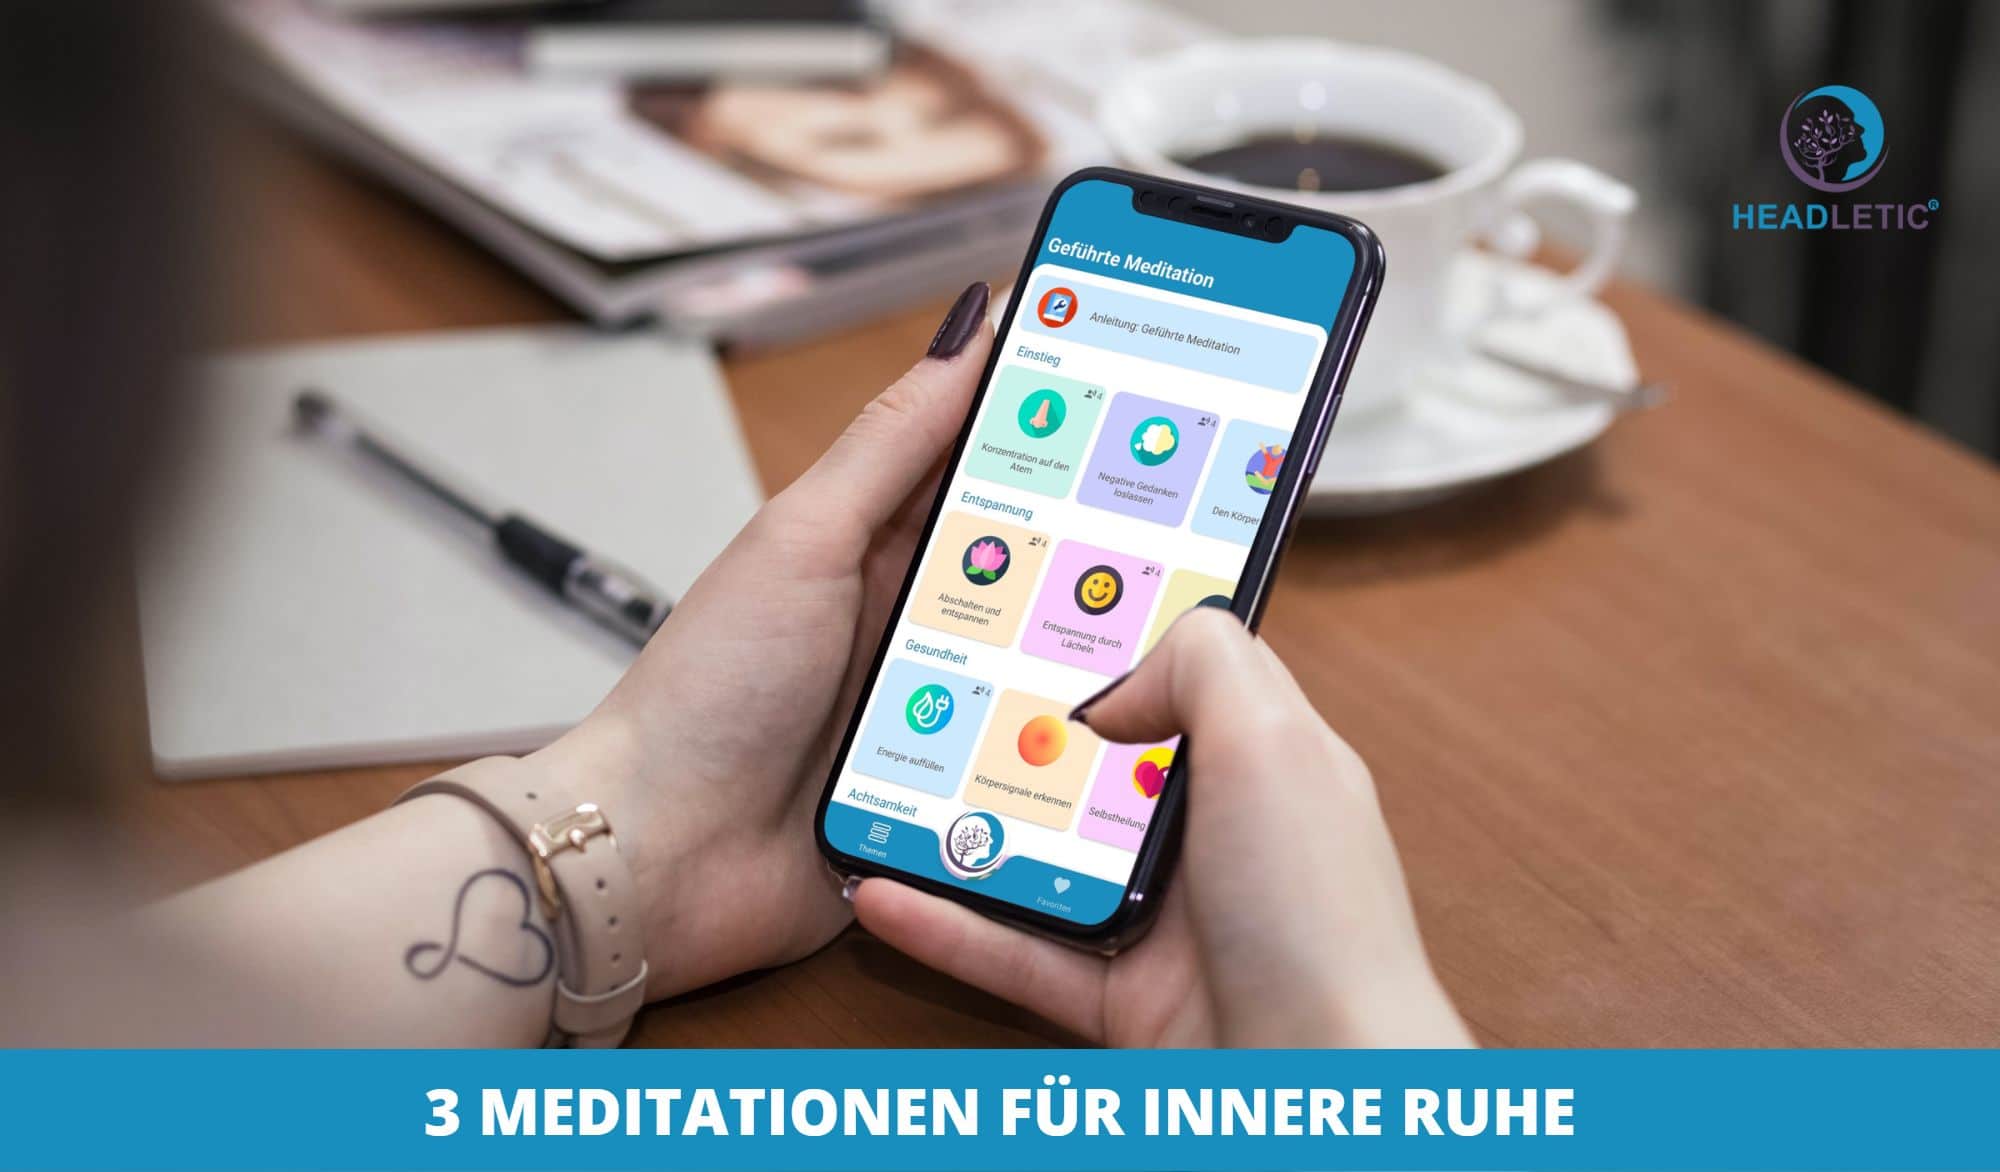 3 Meditationen für innere Ruhe - Headletic Meditationen App